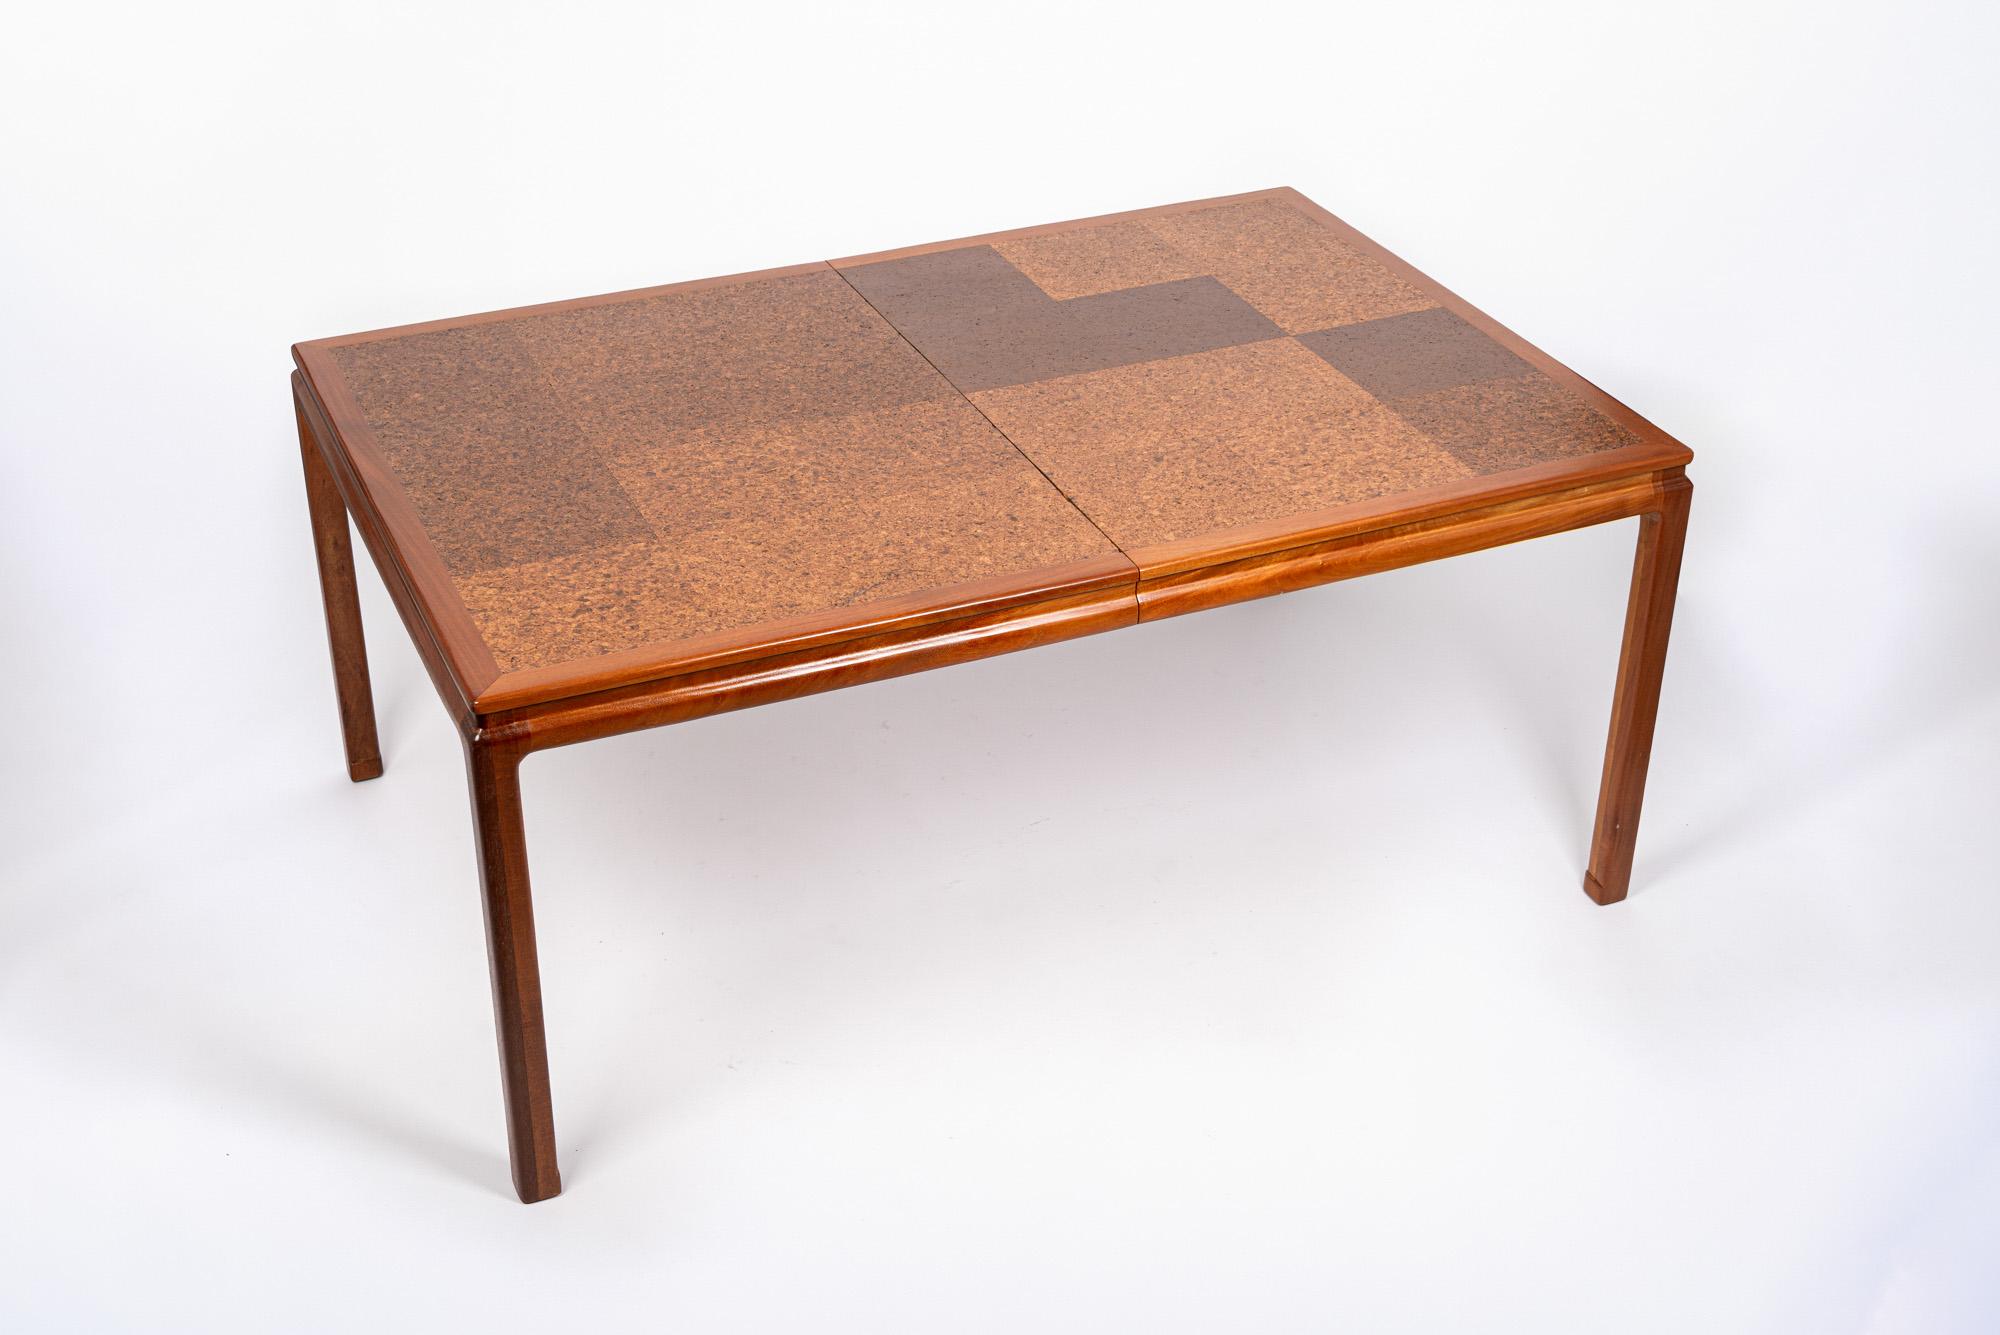 Dieser moderne Esstisch aus der Mitte des Jahrhunderts wurde von Edward Wormley für Dunbar um 1960 entworfen. Dieser außergewöhnliche Tisch hat klare, minimalistische Linien und ist fachmännisch aus Mahagoniholz und Kork gefertigt, mit einer